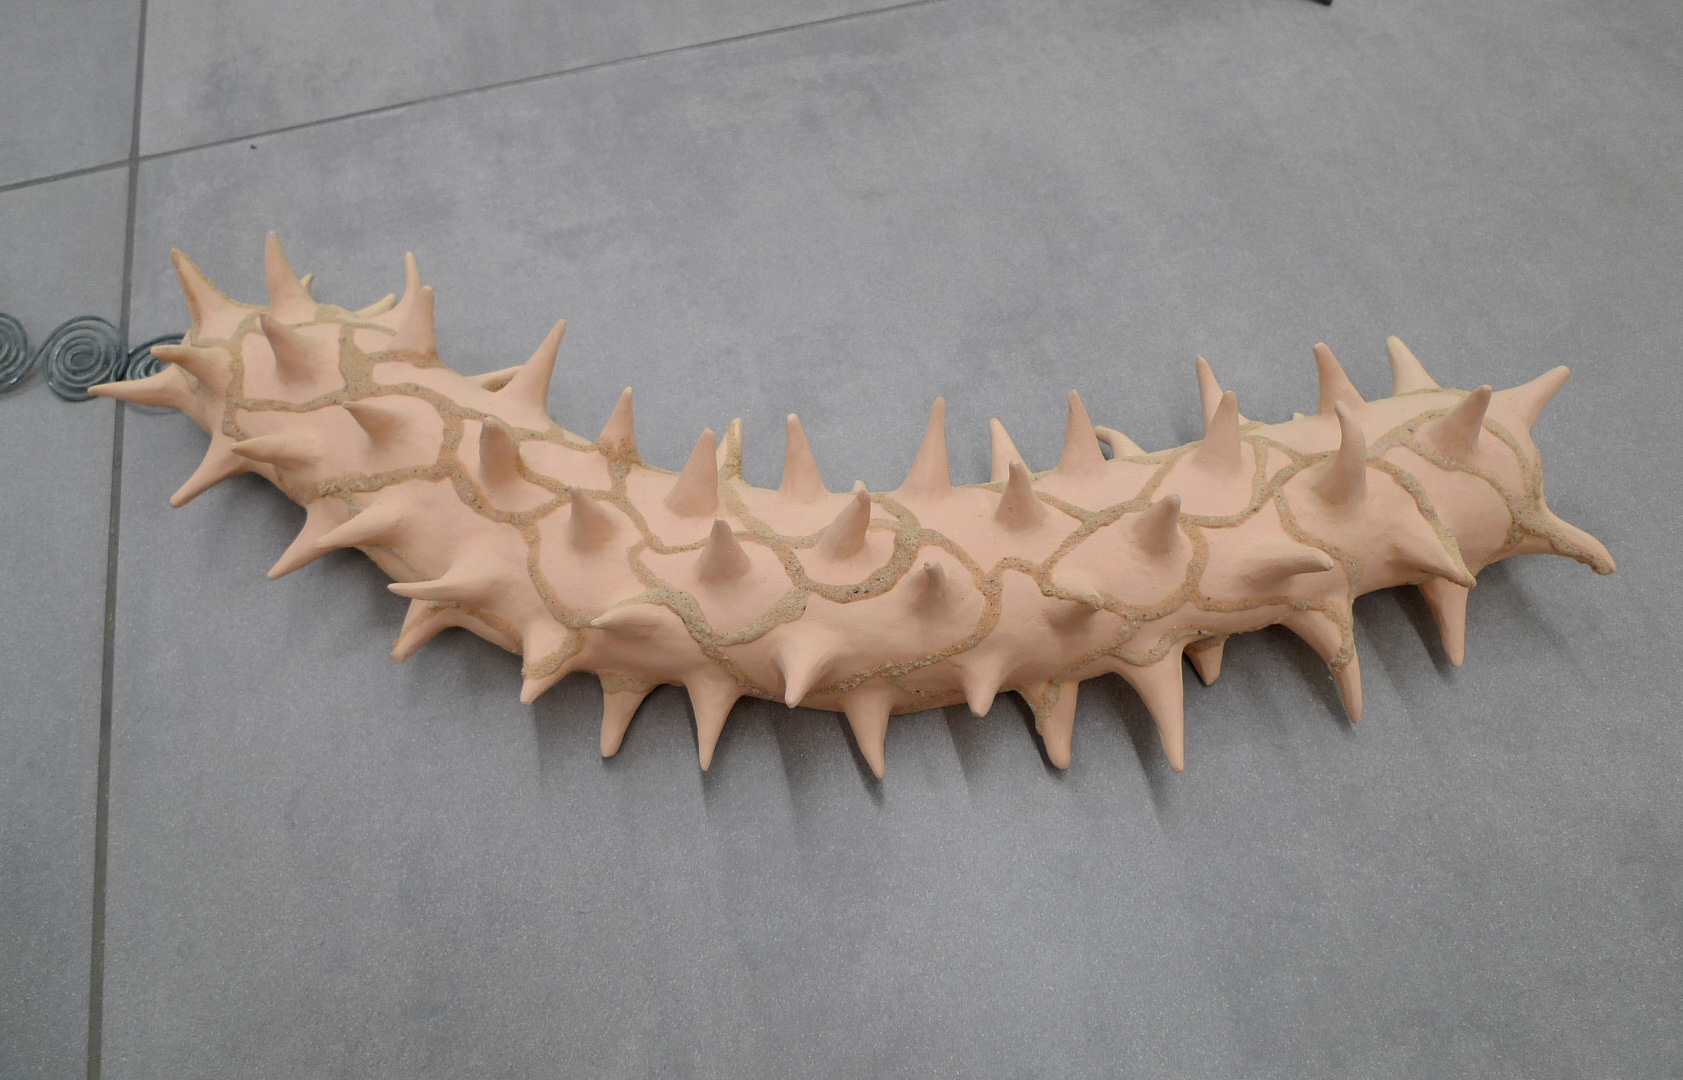 Simone Albers, Prima Materia 2, satellite, 2023, metalwire, ceramics, acrylic, sand, 8 x 18 x 54 cm